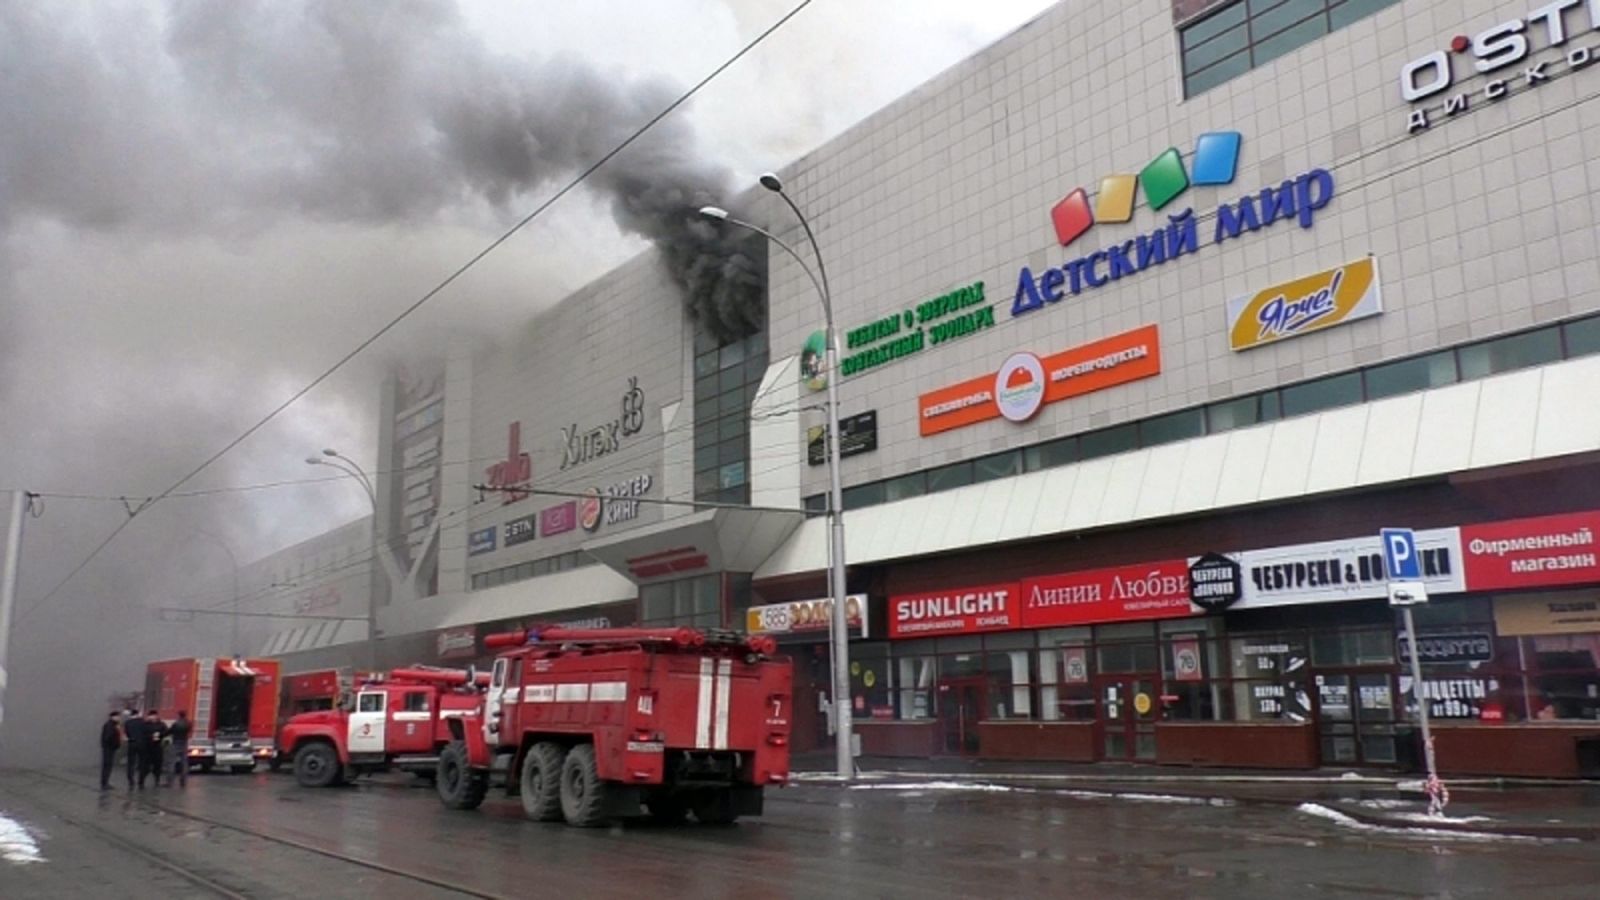 Koszmarny pożar centrum handlowego. Nie żyją dziesiątki osób